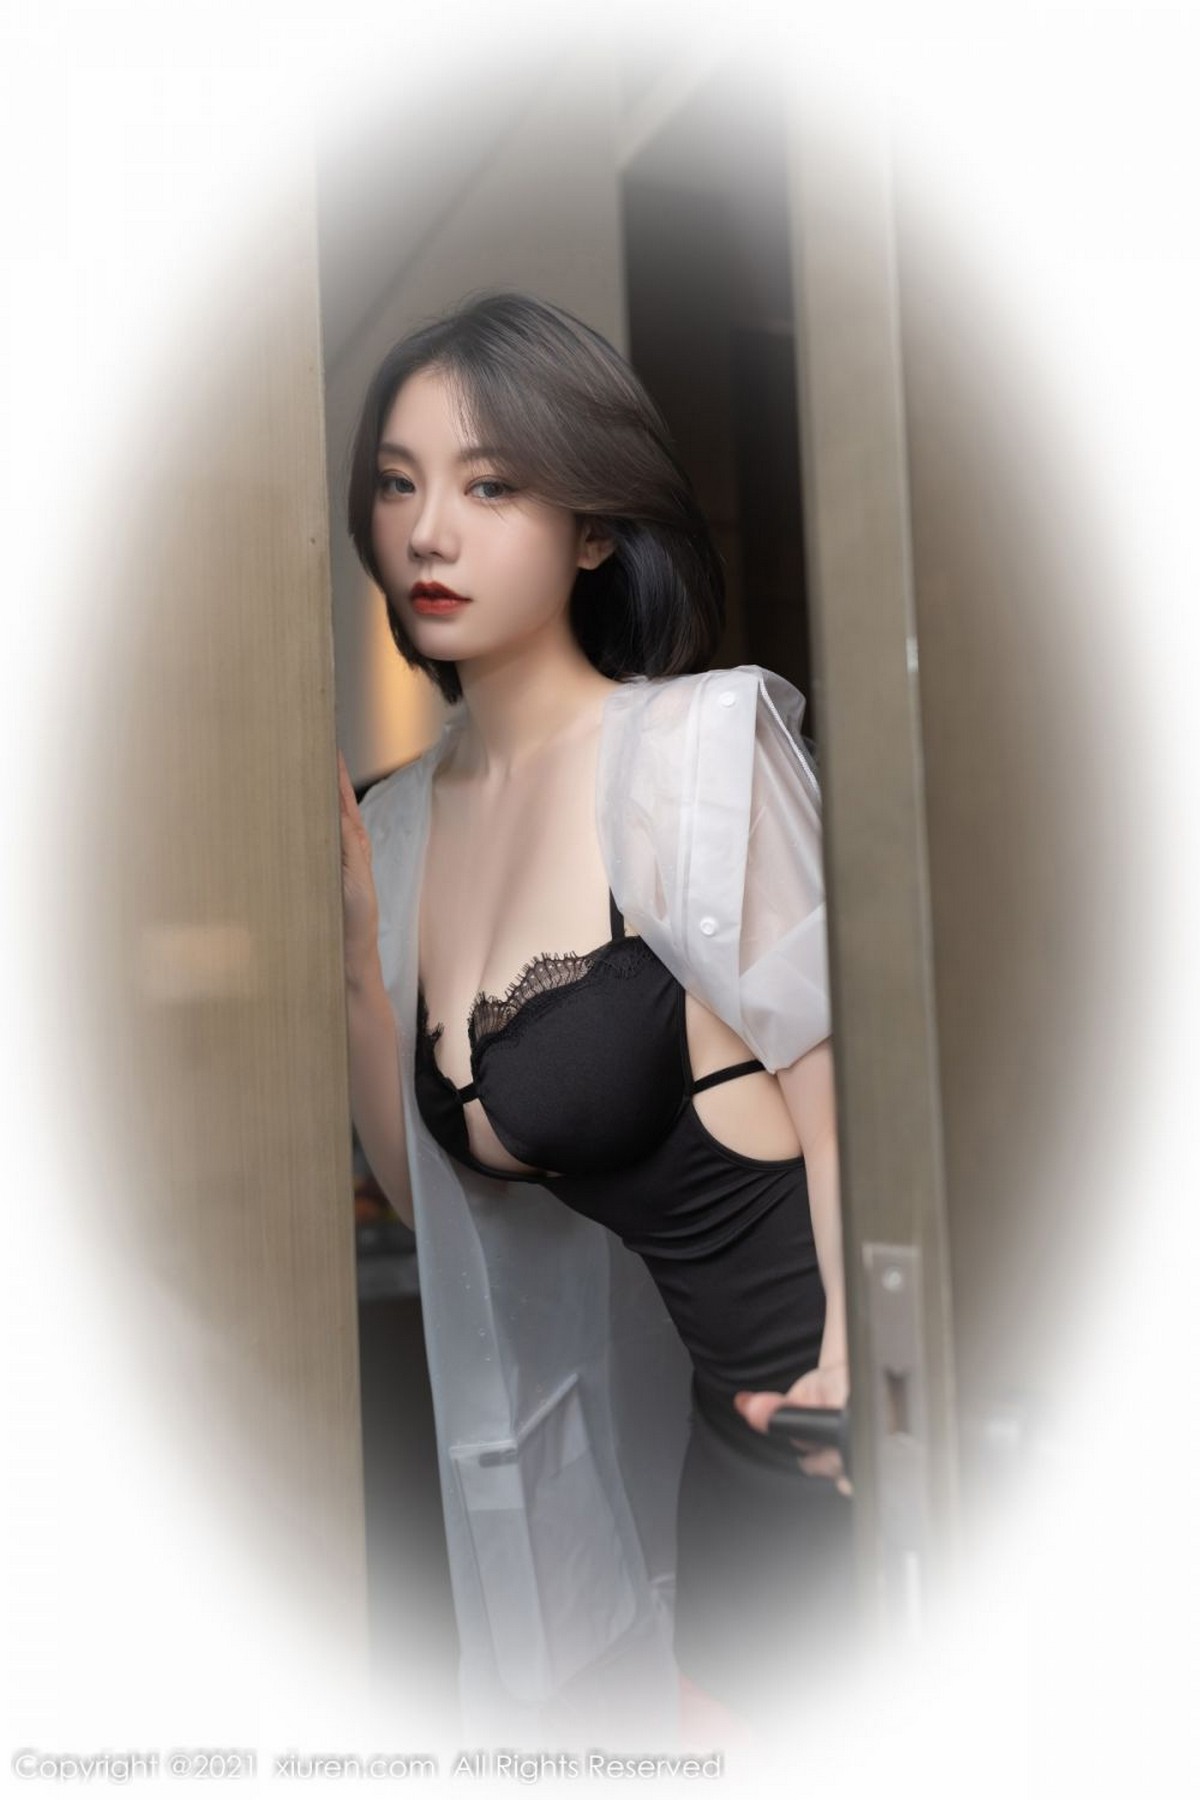 安然红丝吊袜撩人诱惑写真模特重庆旅拍美女套图